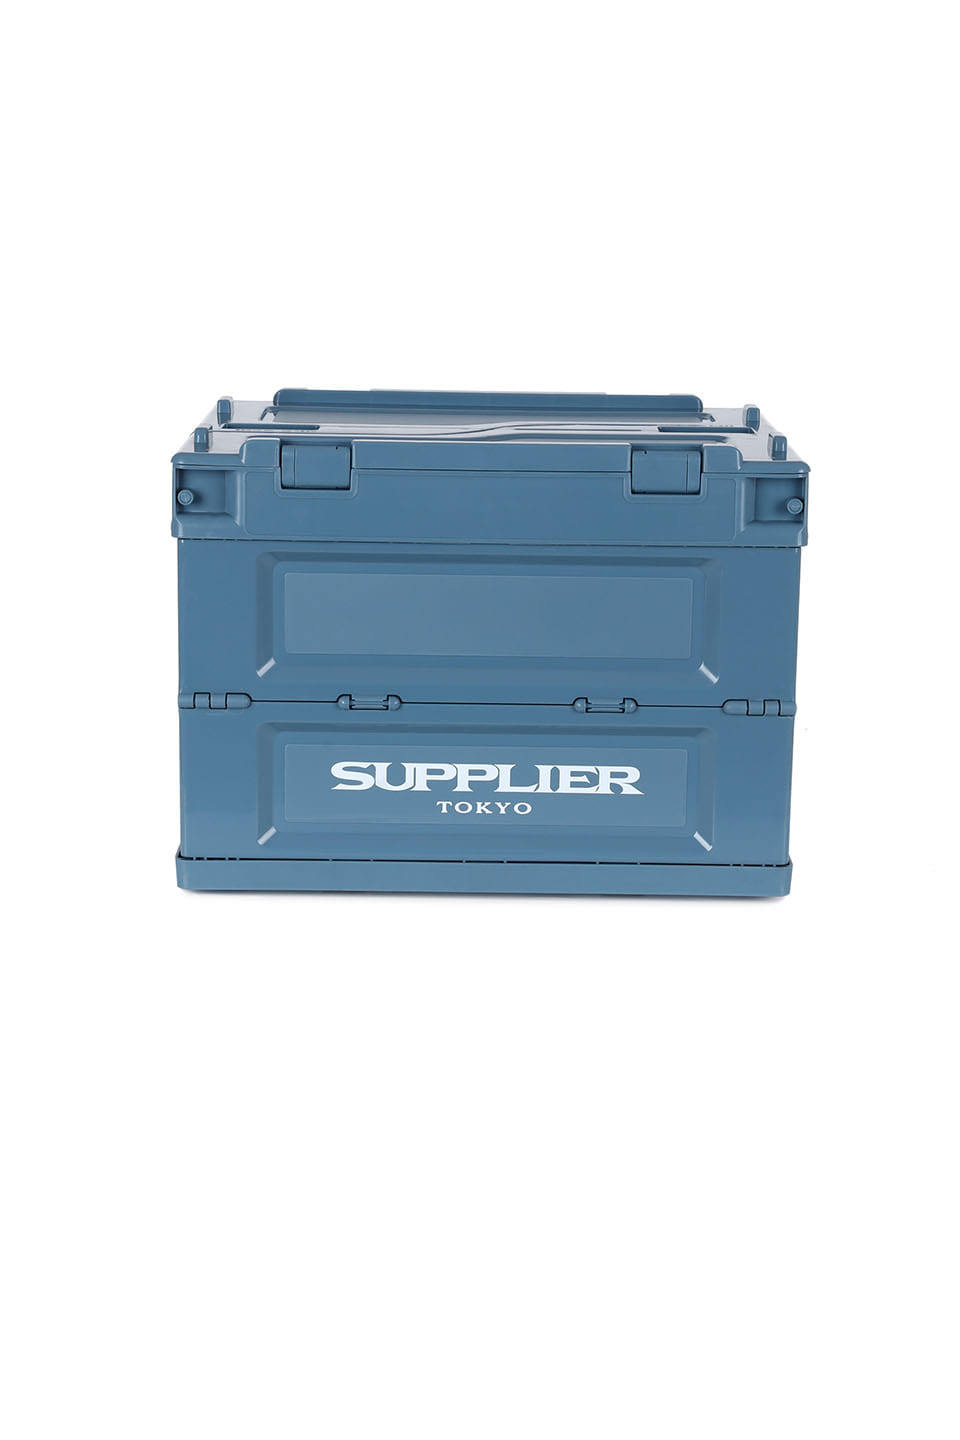 Supplier Mini Box 18L